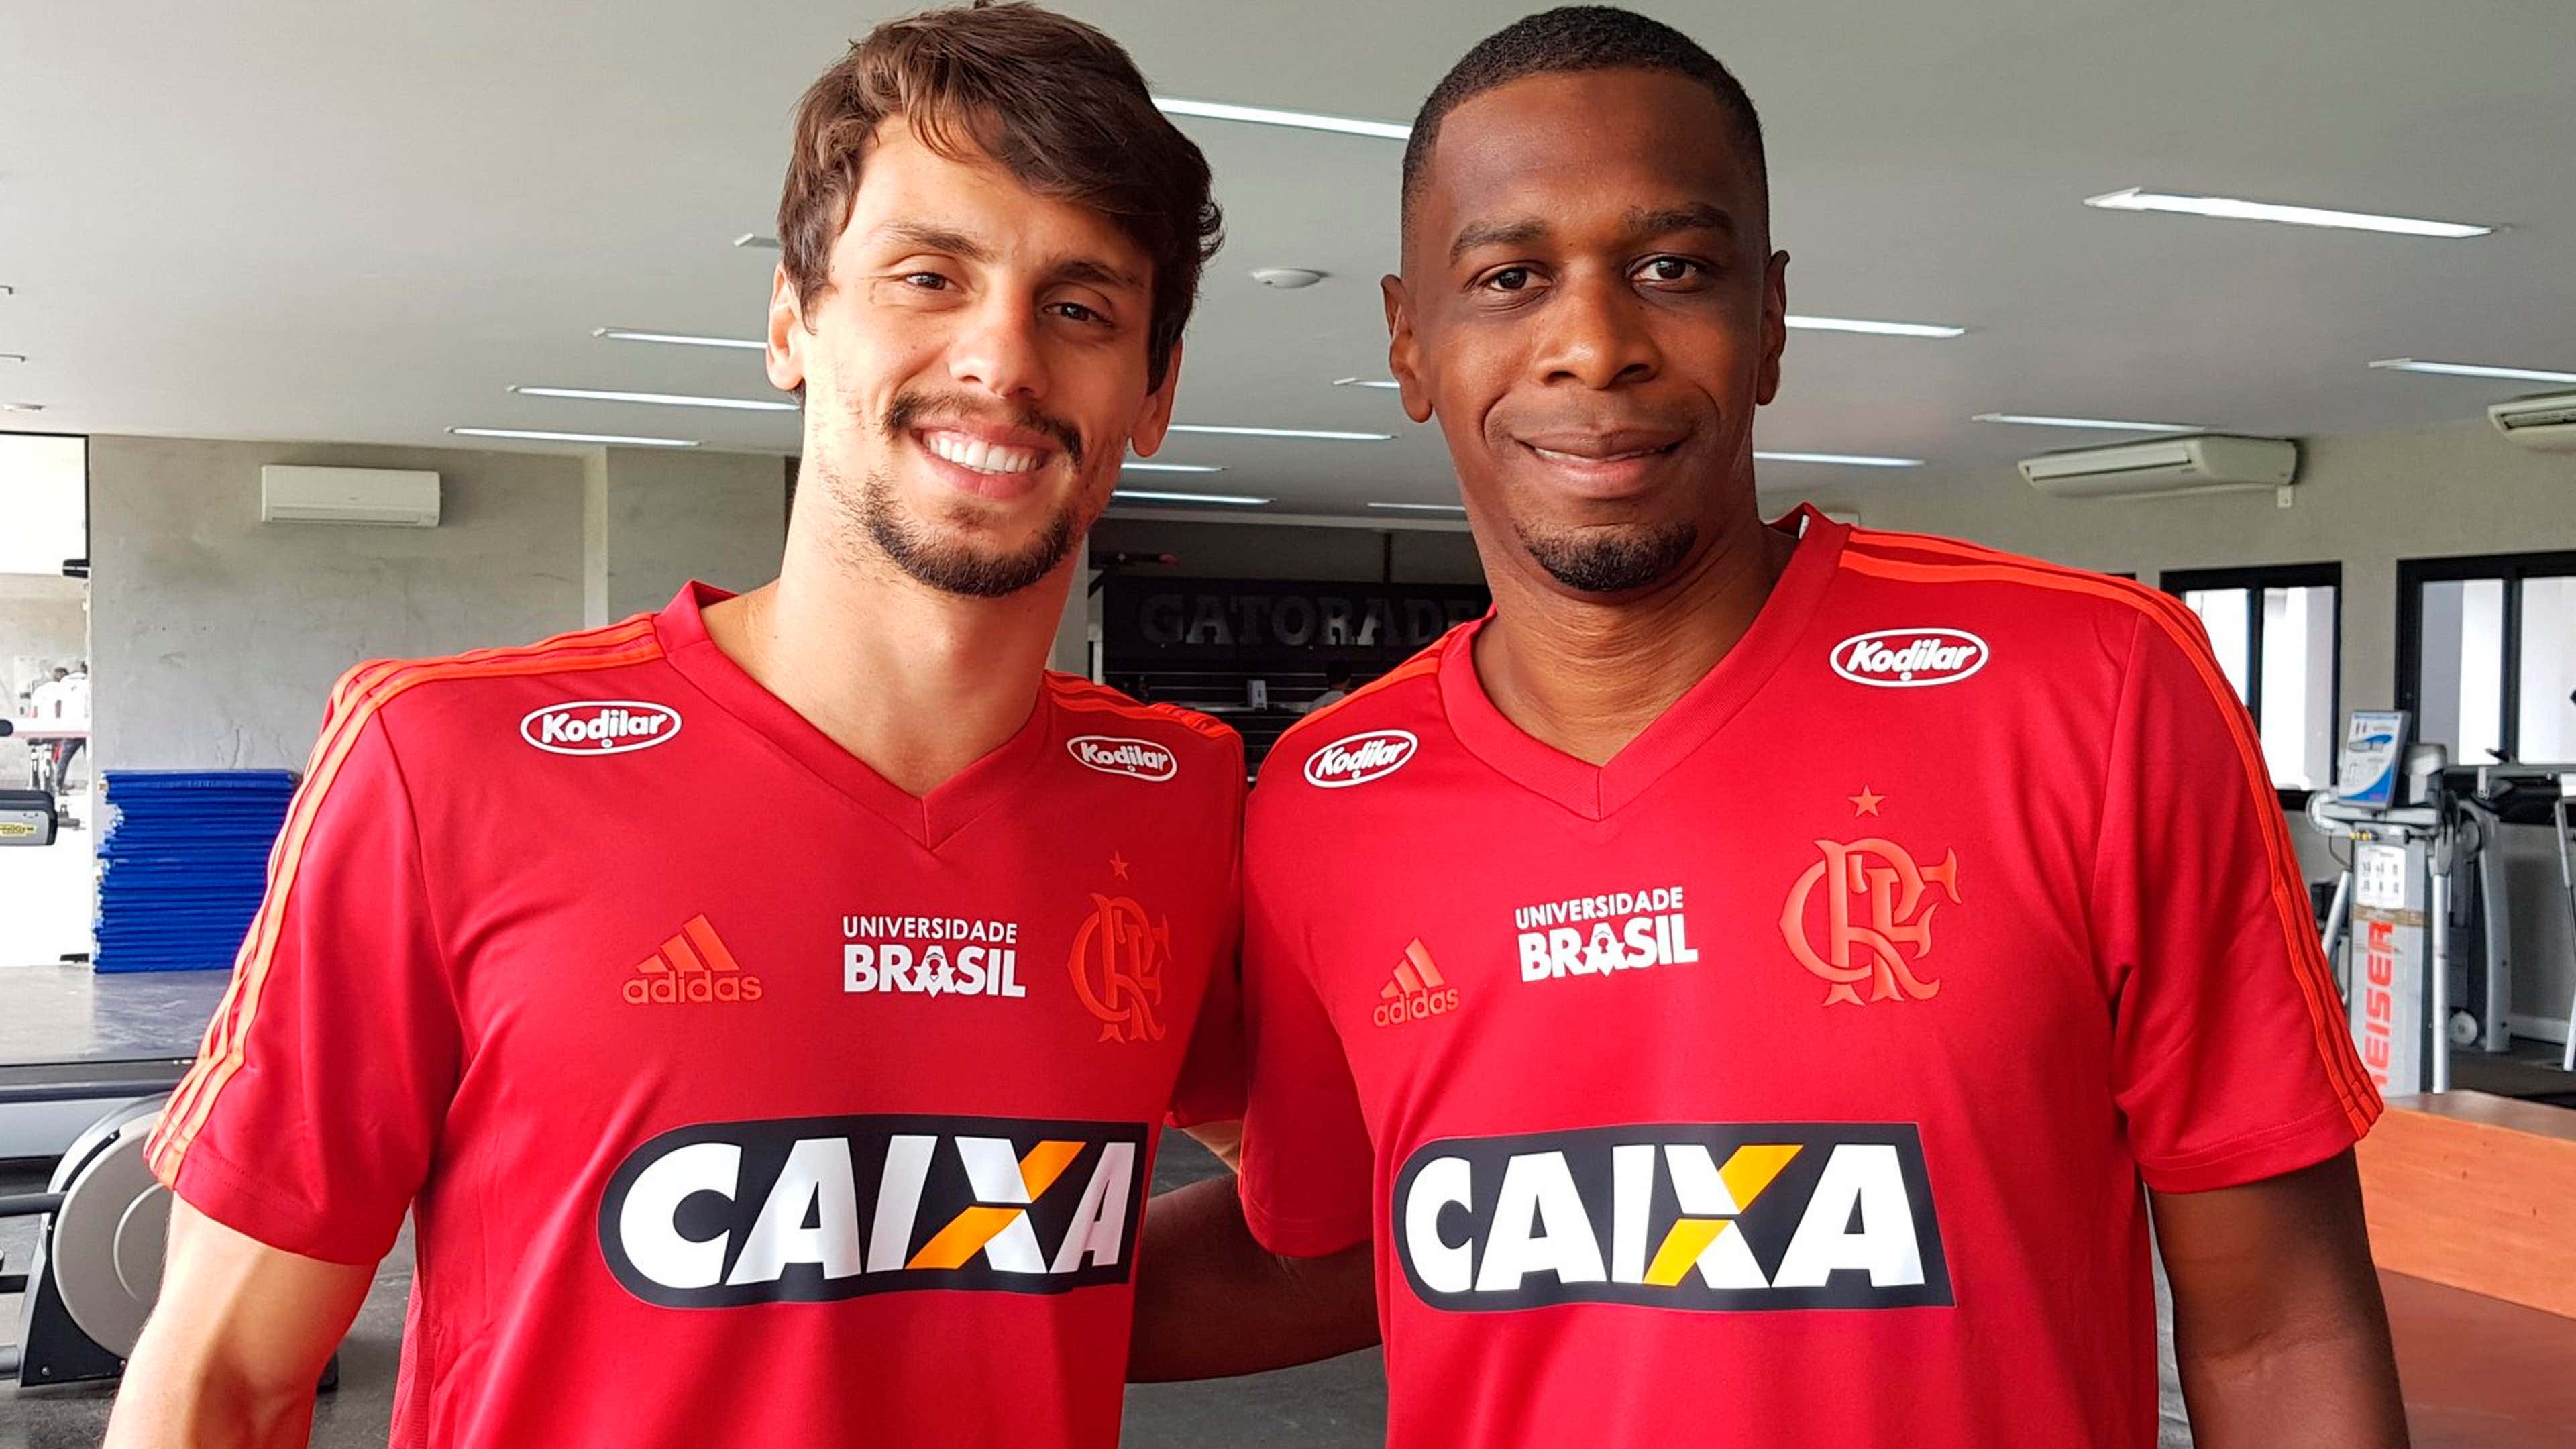 Flamengo divulga lista de relacionados com volta de Rodrigo Caio confirmada, flamengo